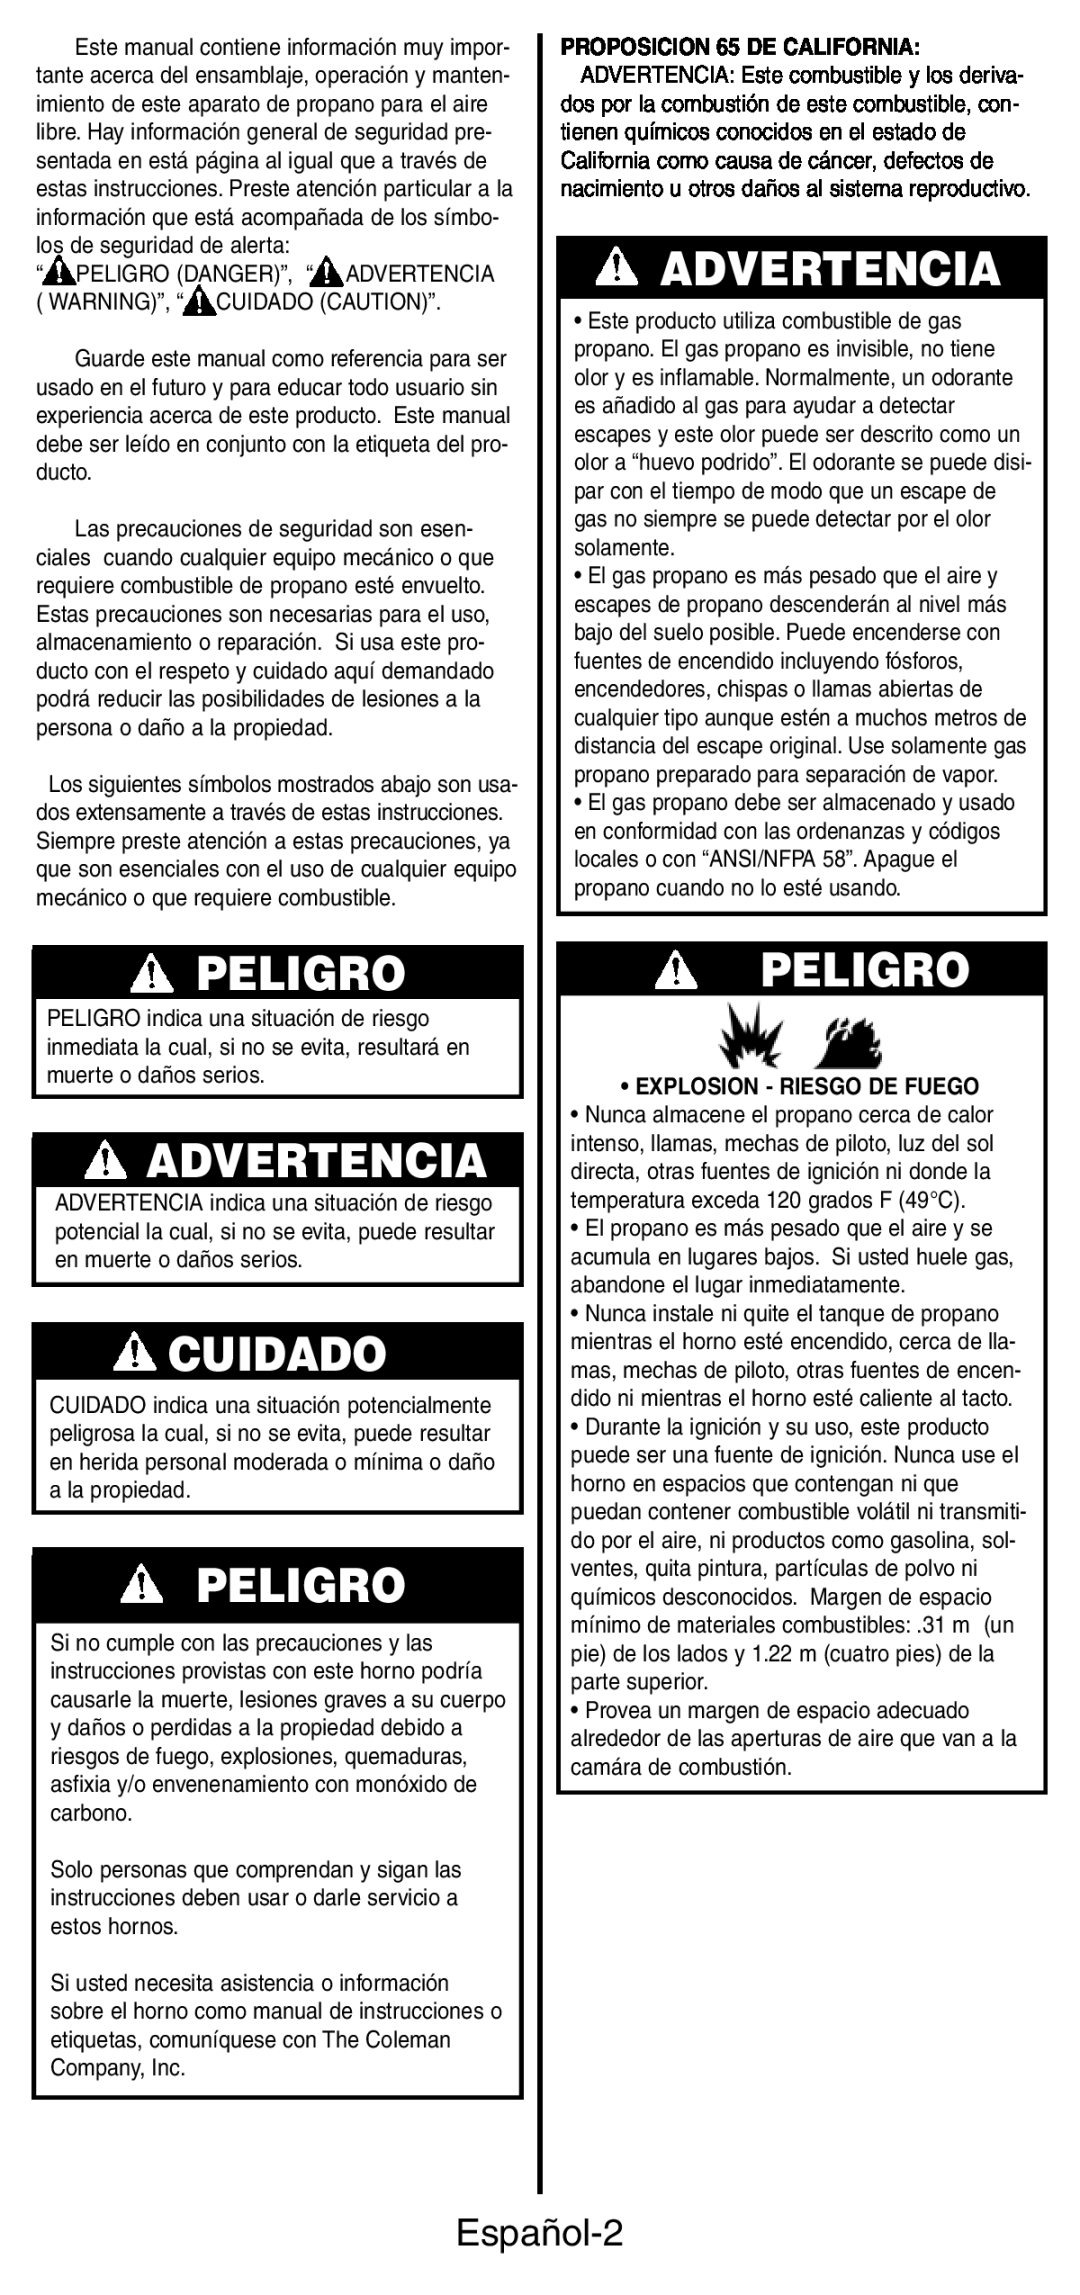 Coleman 9927 manual Peligro, Advertencia, Cuidado, Español-2, •Explosion - Riesgo De Fuego 